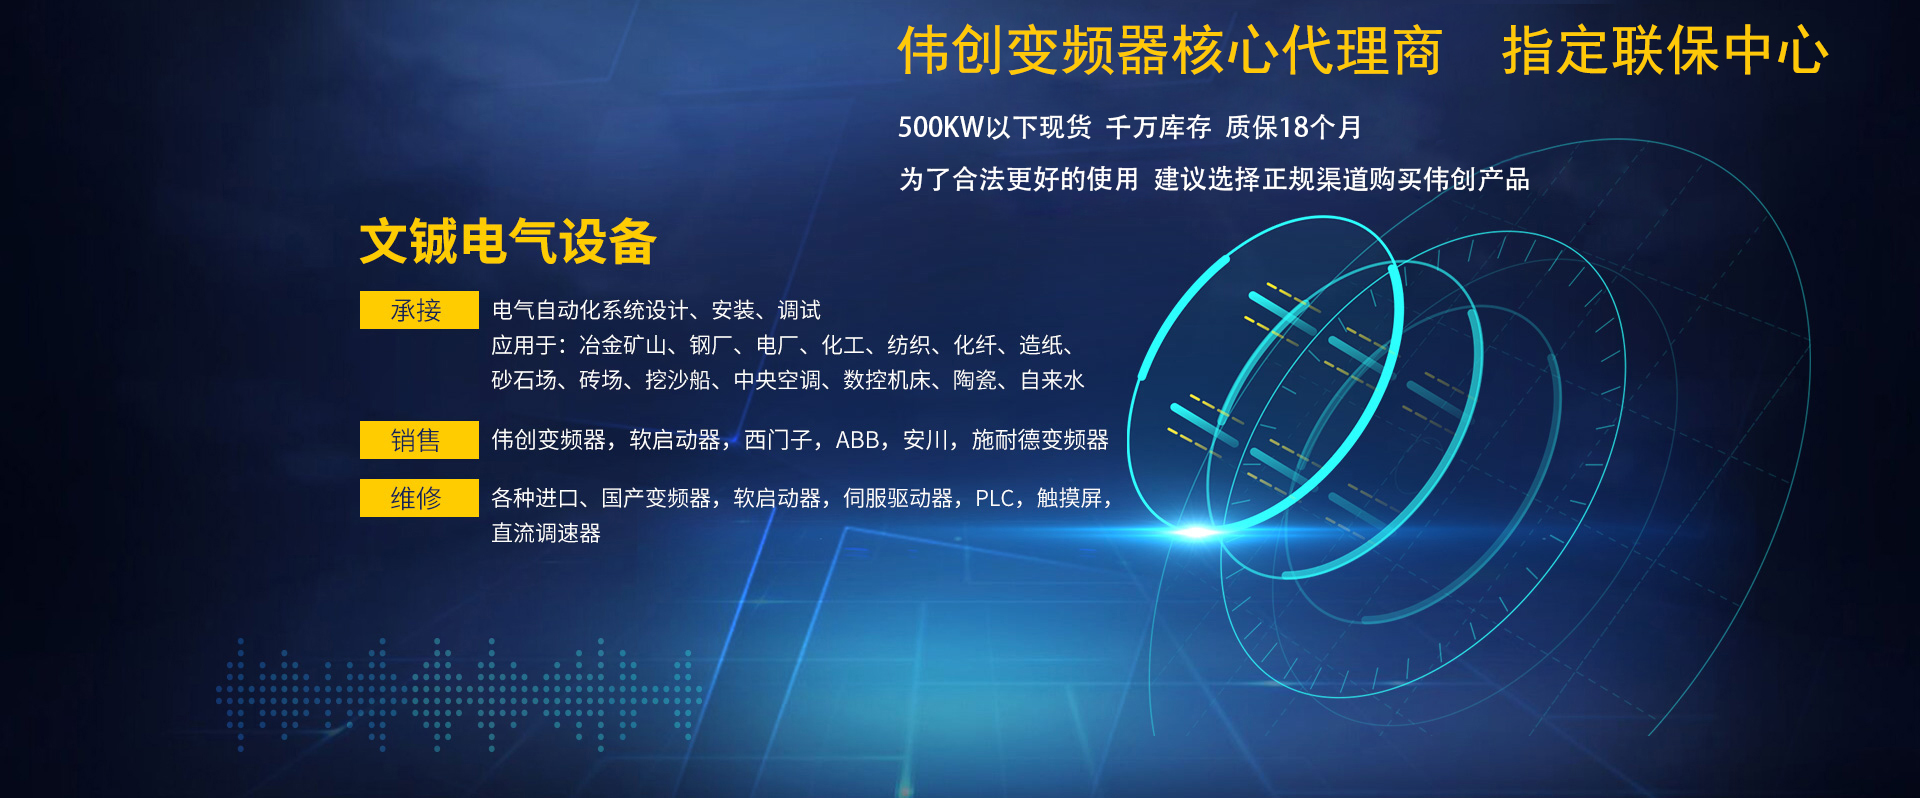 长沙文铖电气设备有限公司_长沙变频器|长沙控制柜